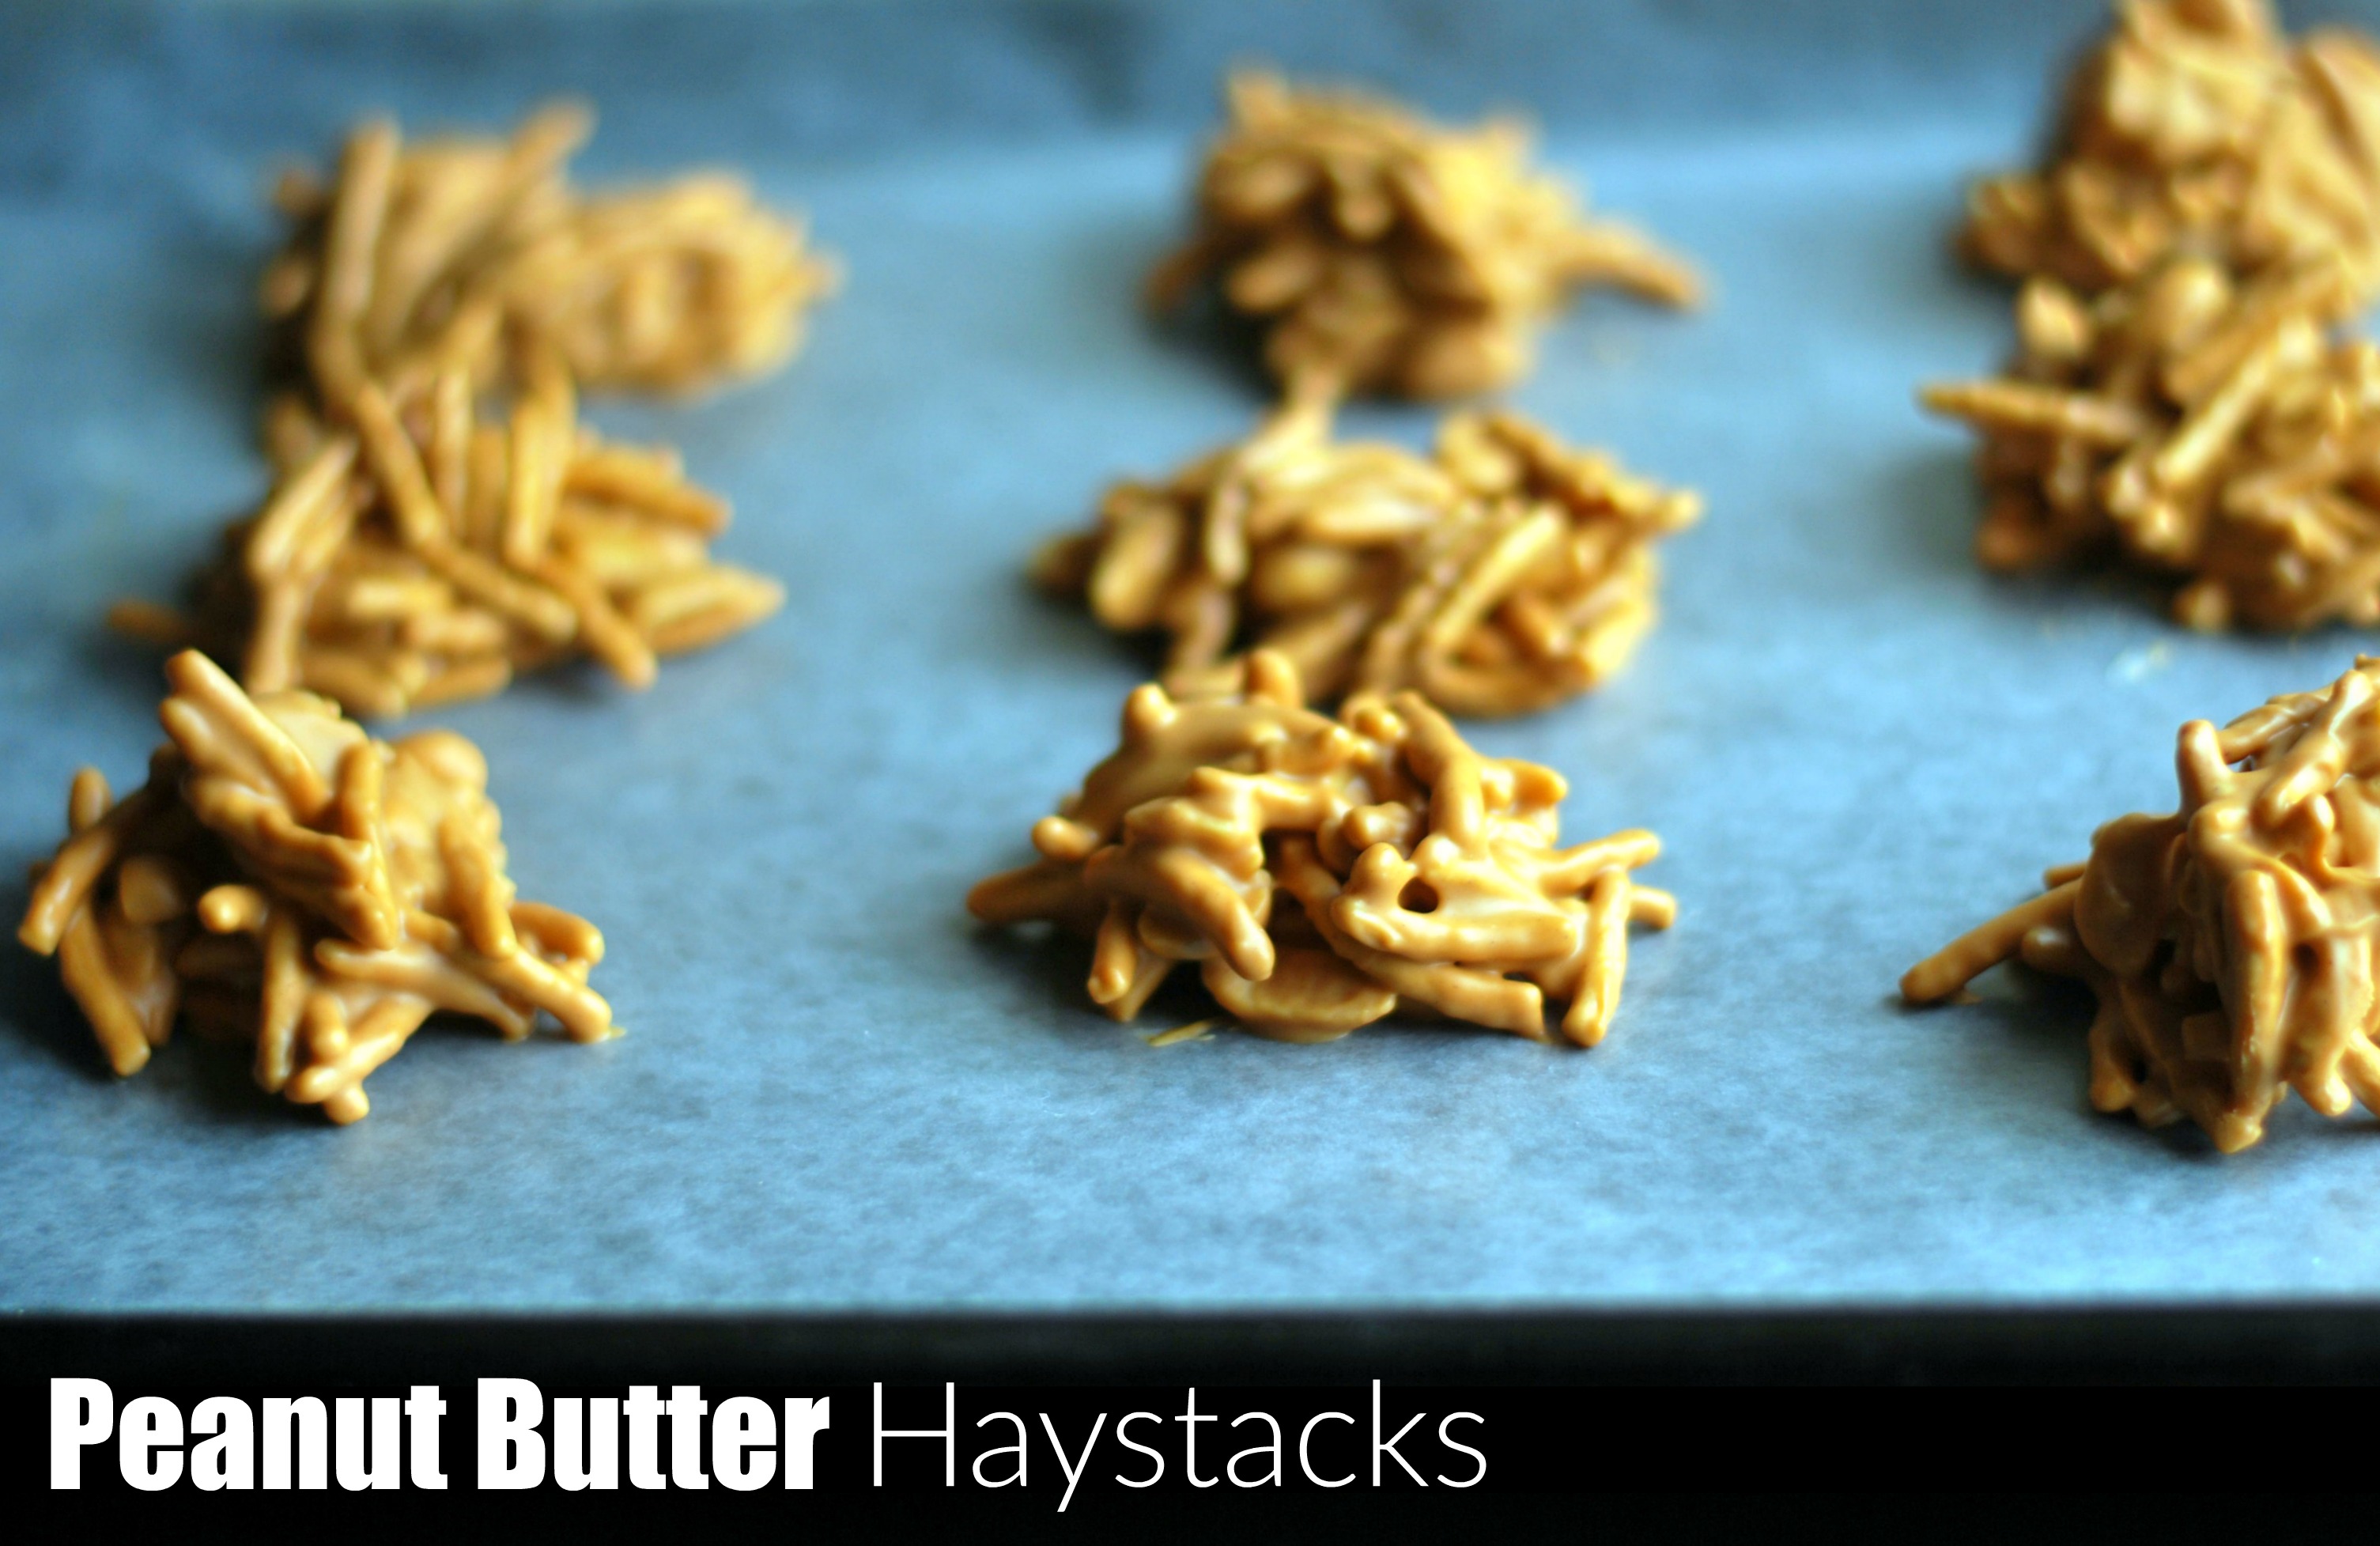 Peanut Butter Haystacks